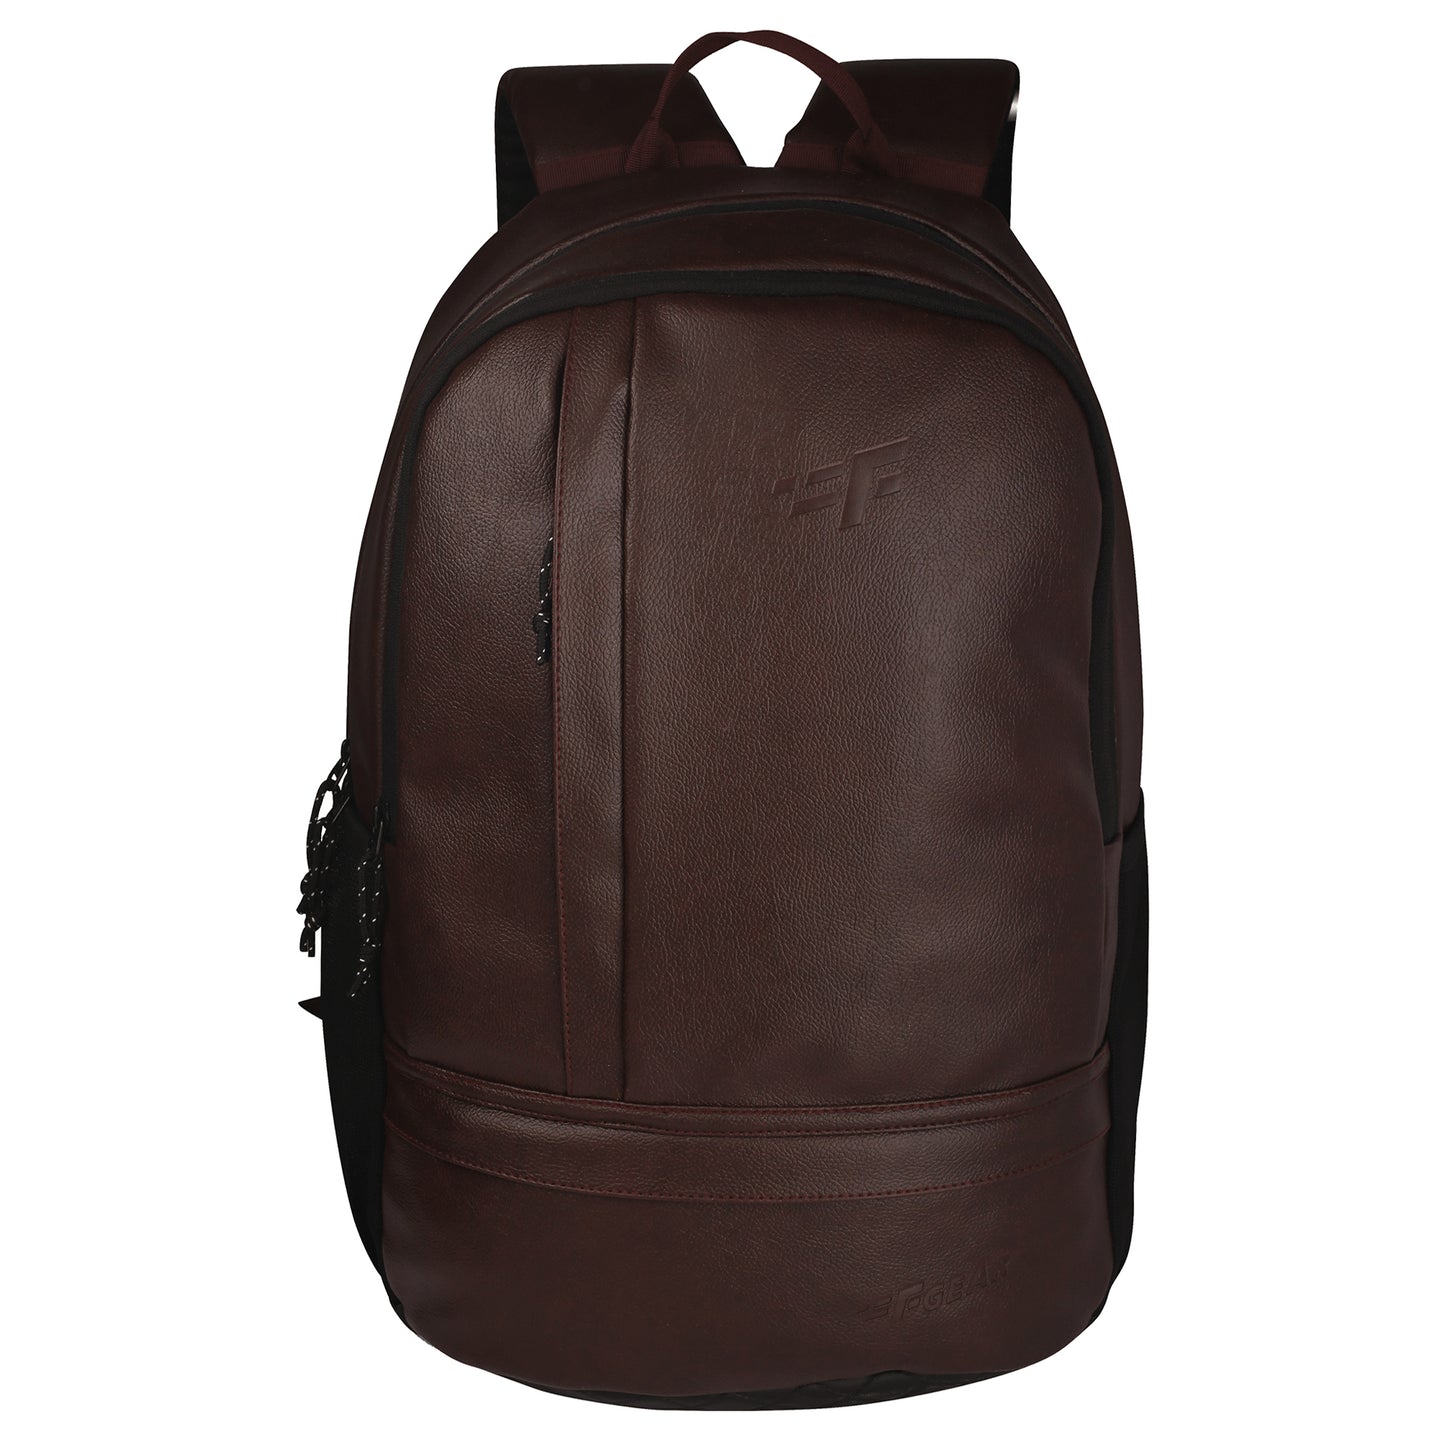 Burner 22L Brown Laptop Backpack